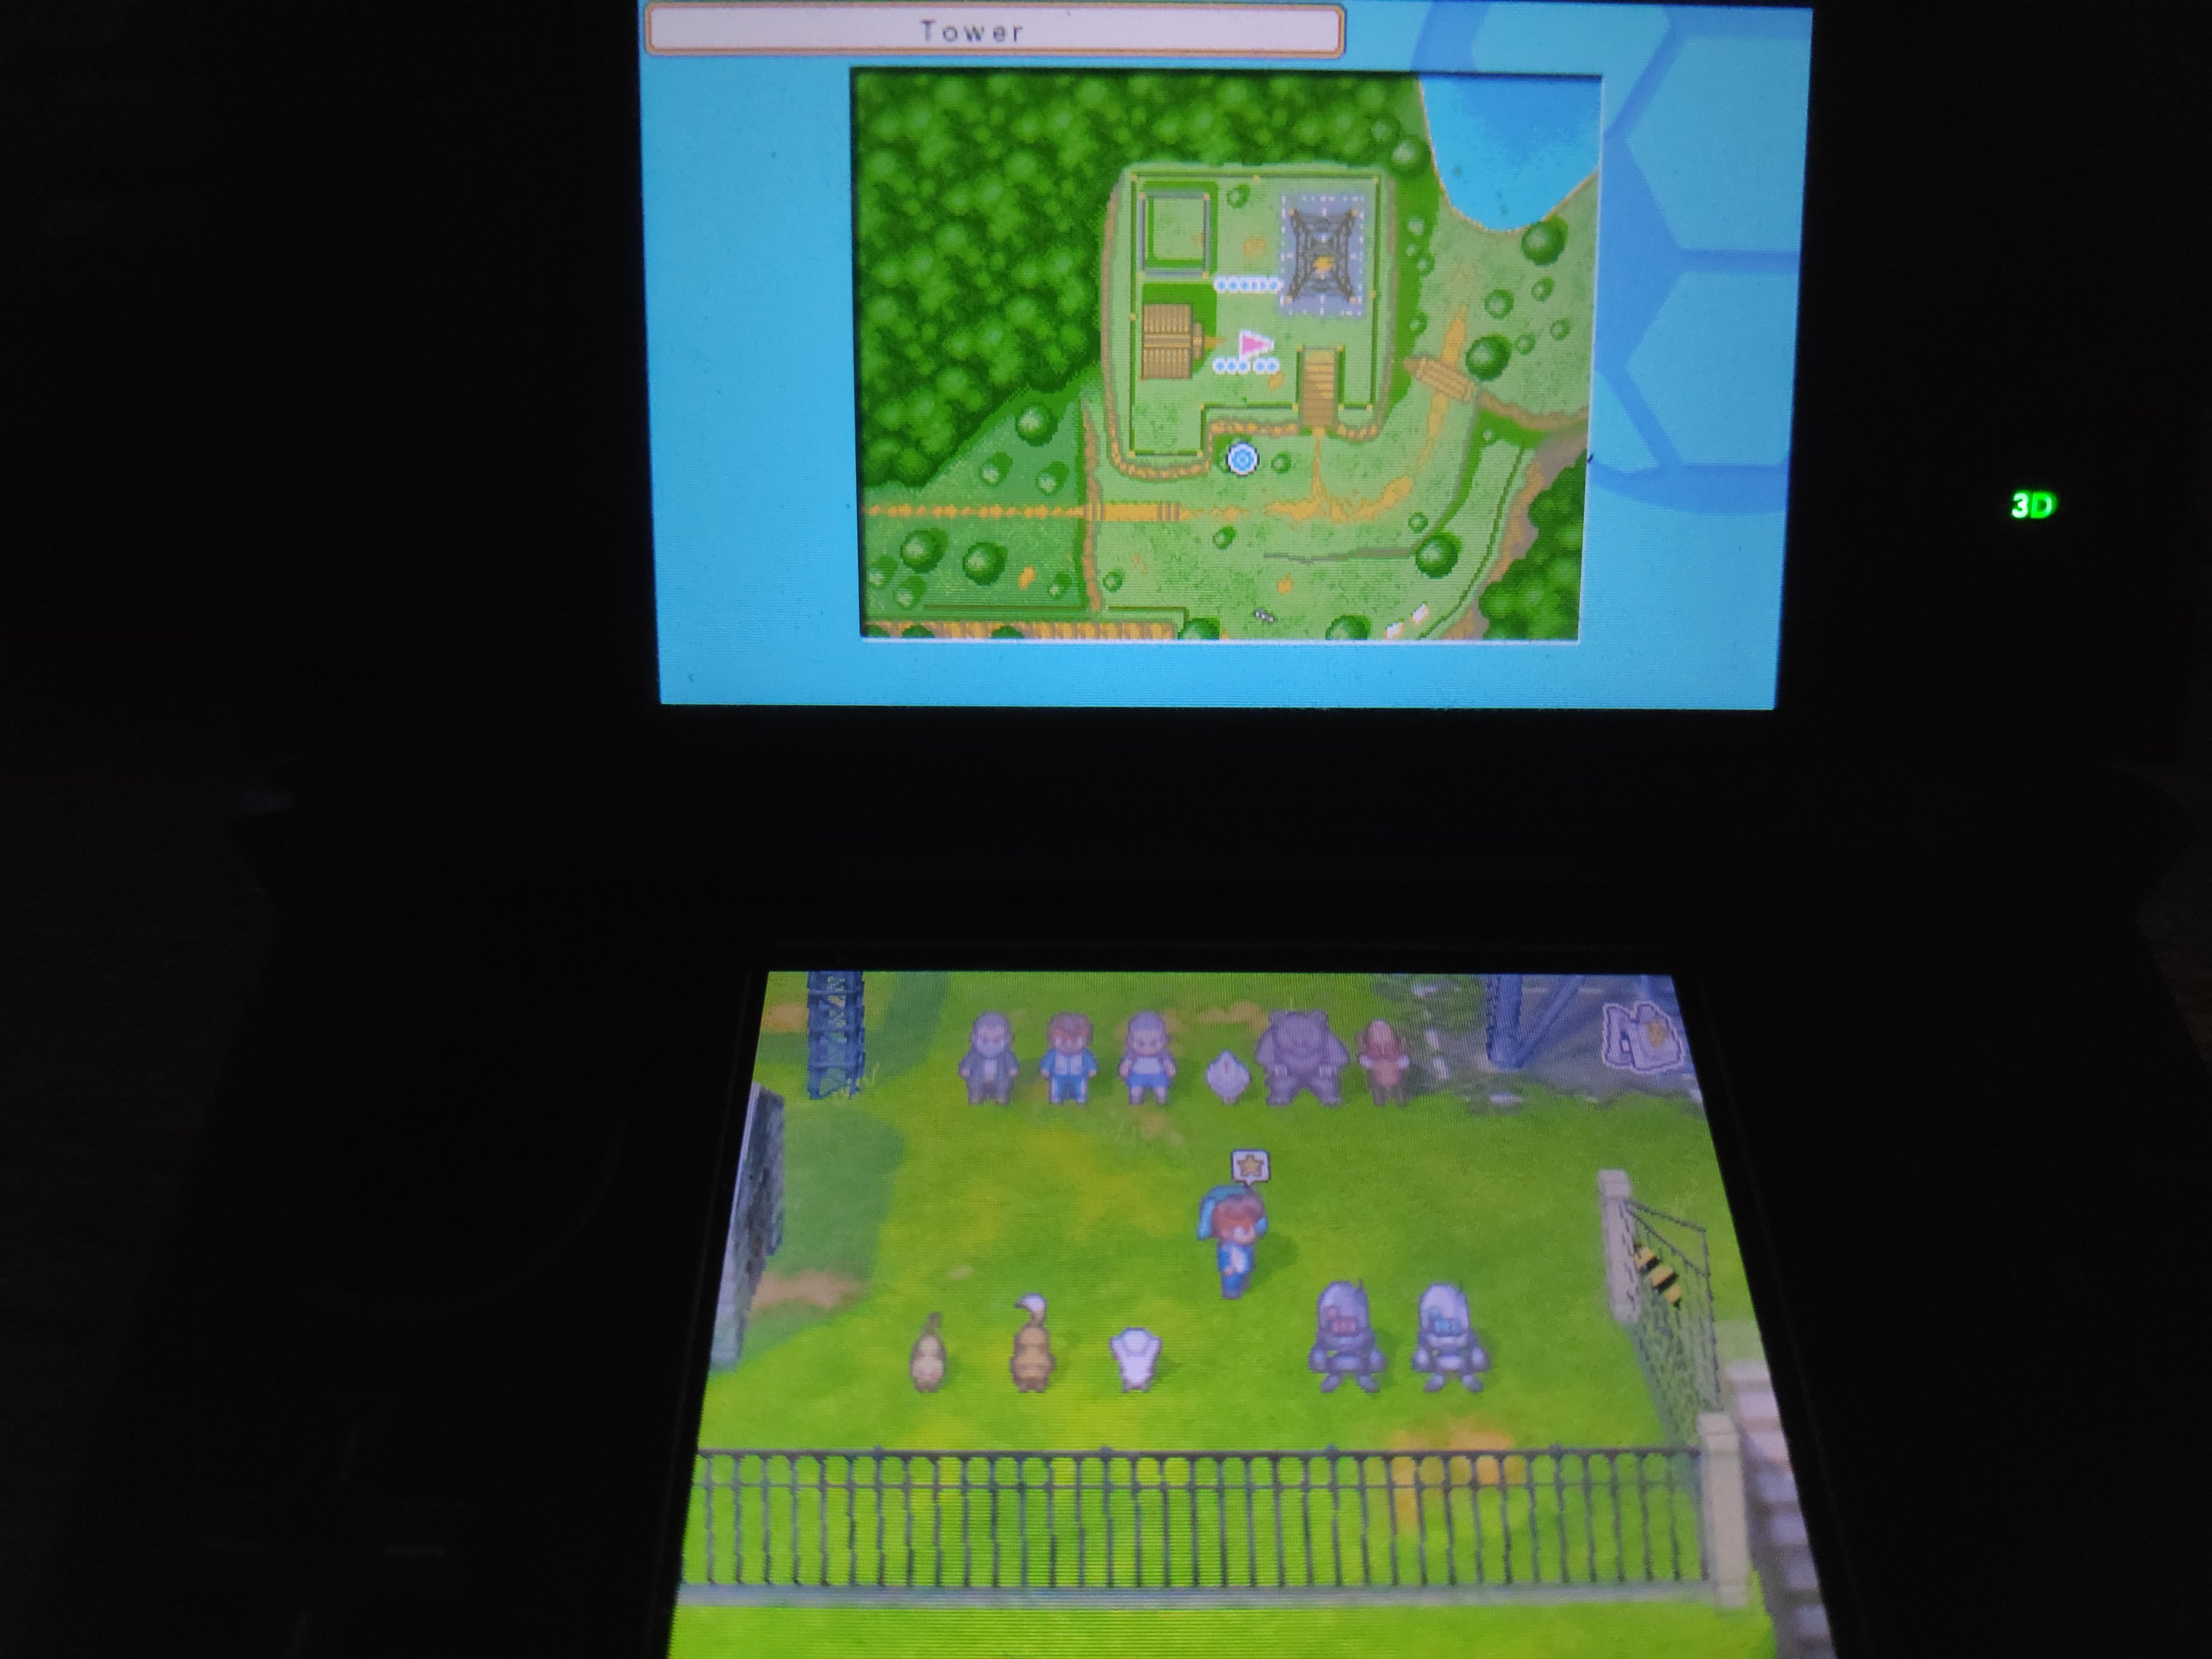 Jogo Nintendo 3DS Inazuma Eleven 3: Team Ogre Attacks